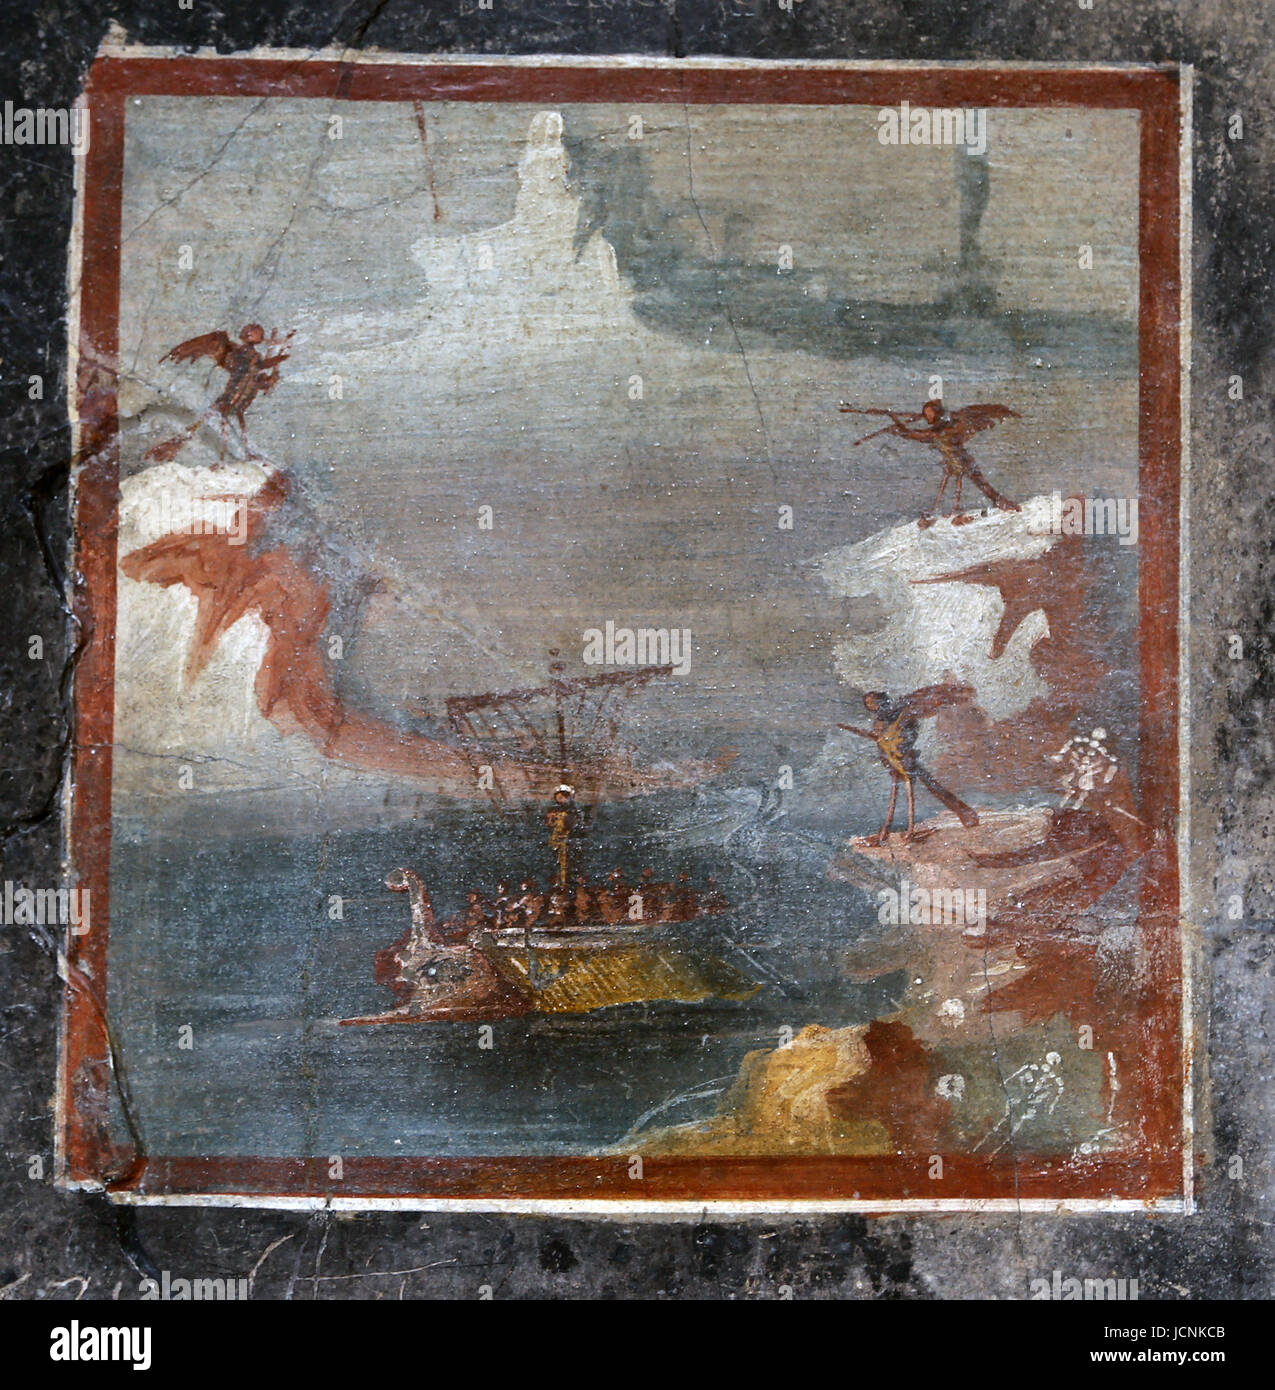 Mur peint : Ulysse résiste à la chanson des sirènes. Romain, ch. 50-75 Ad. De Pompéi. L'Italie. British Museum. Londres, Royaume-Uni. Banque D'Images